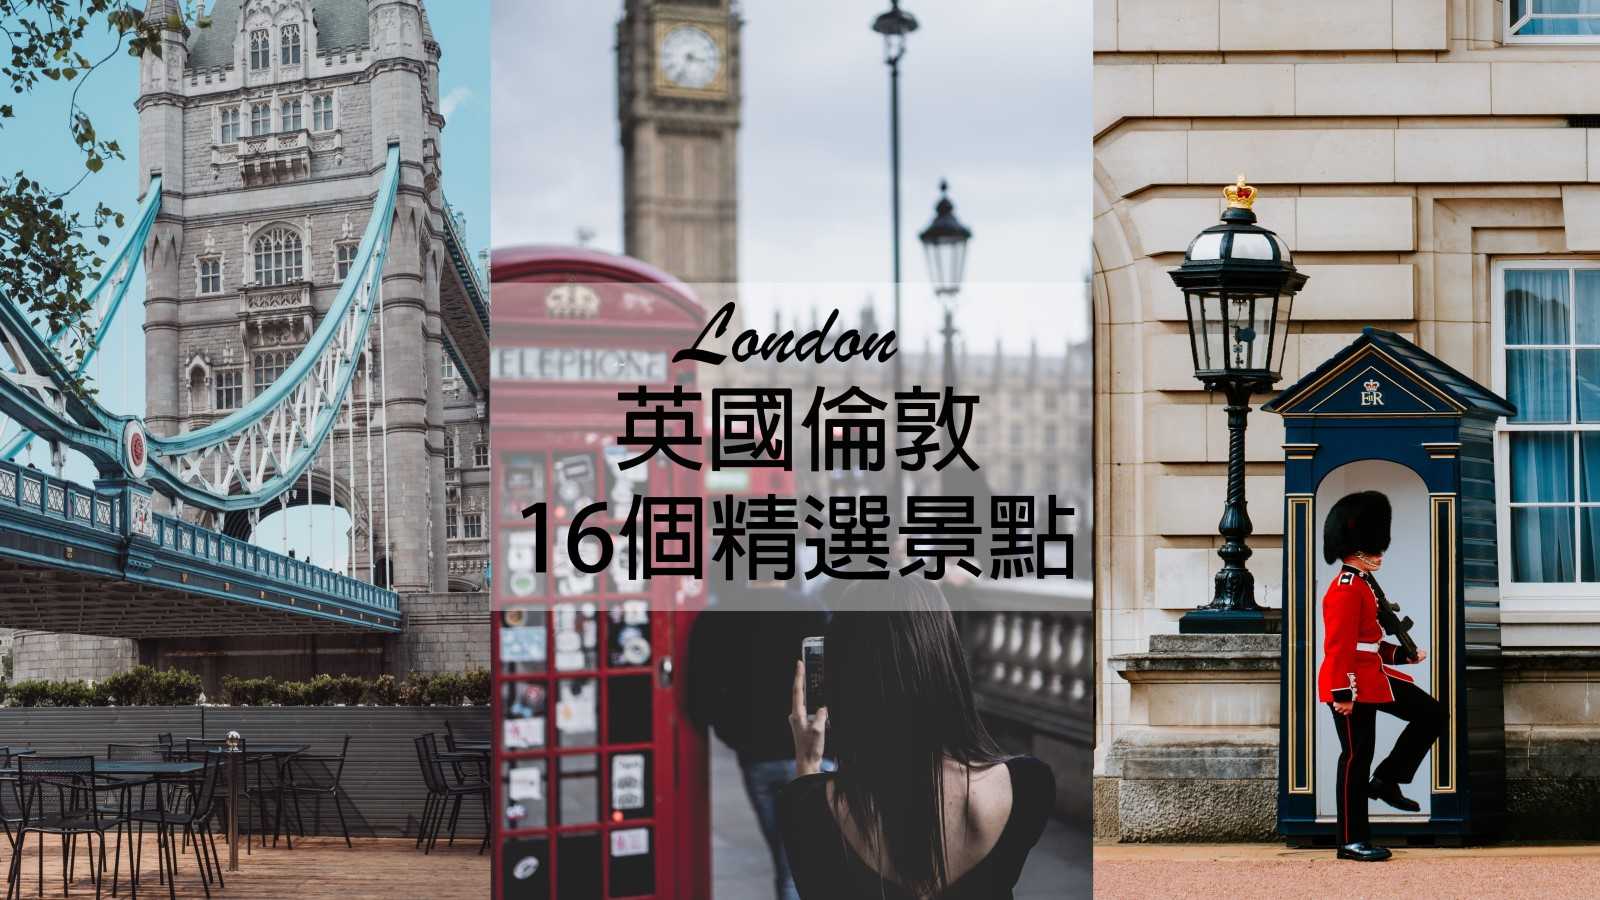 【英國倫敦】16個精選倫敦景點懶人包 London